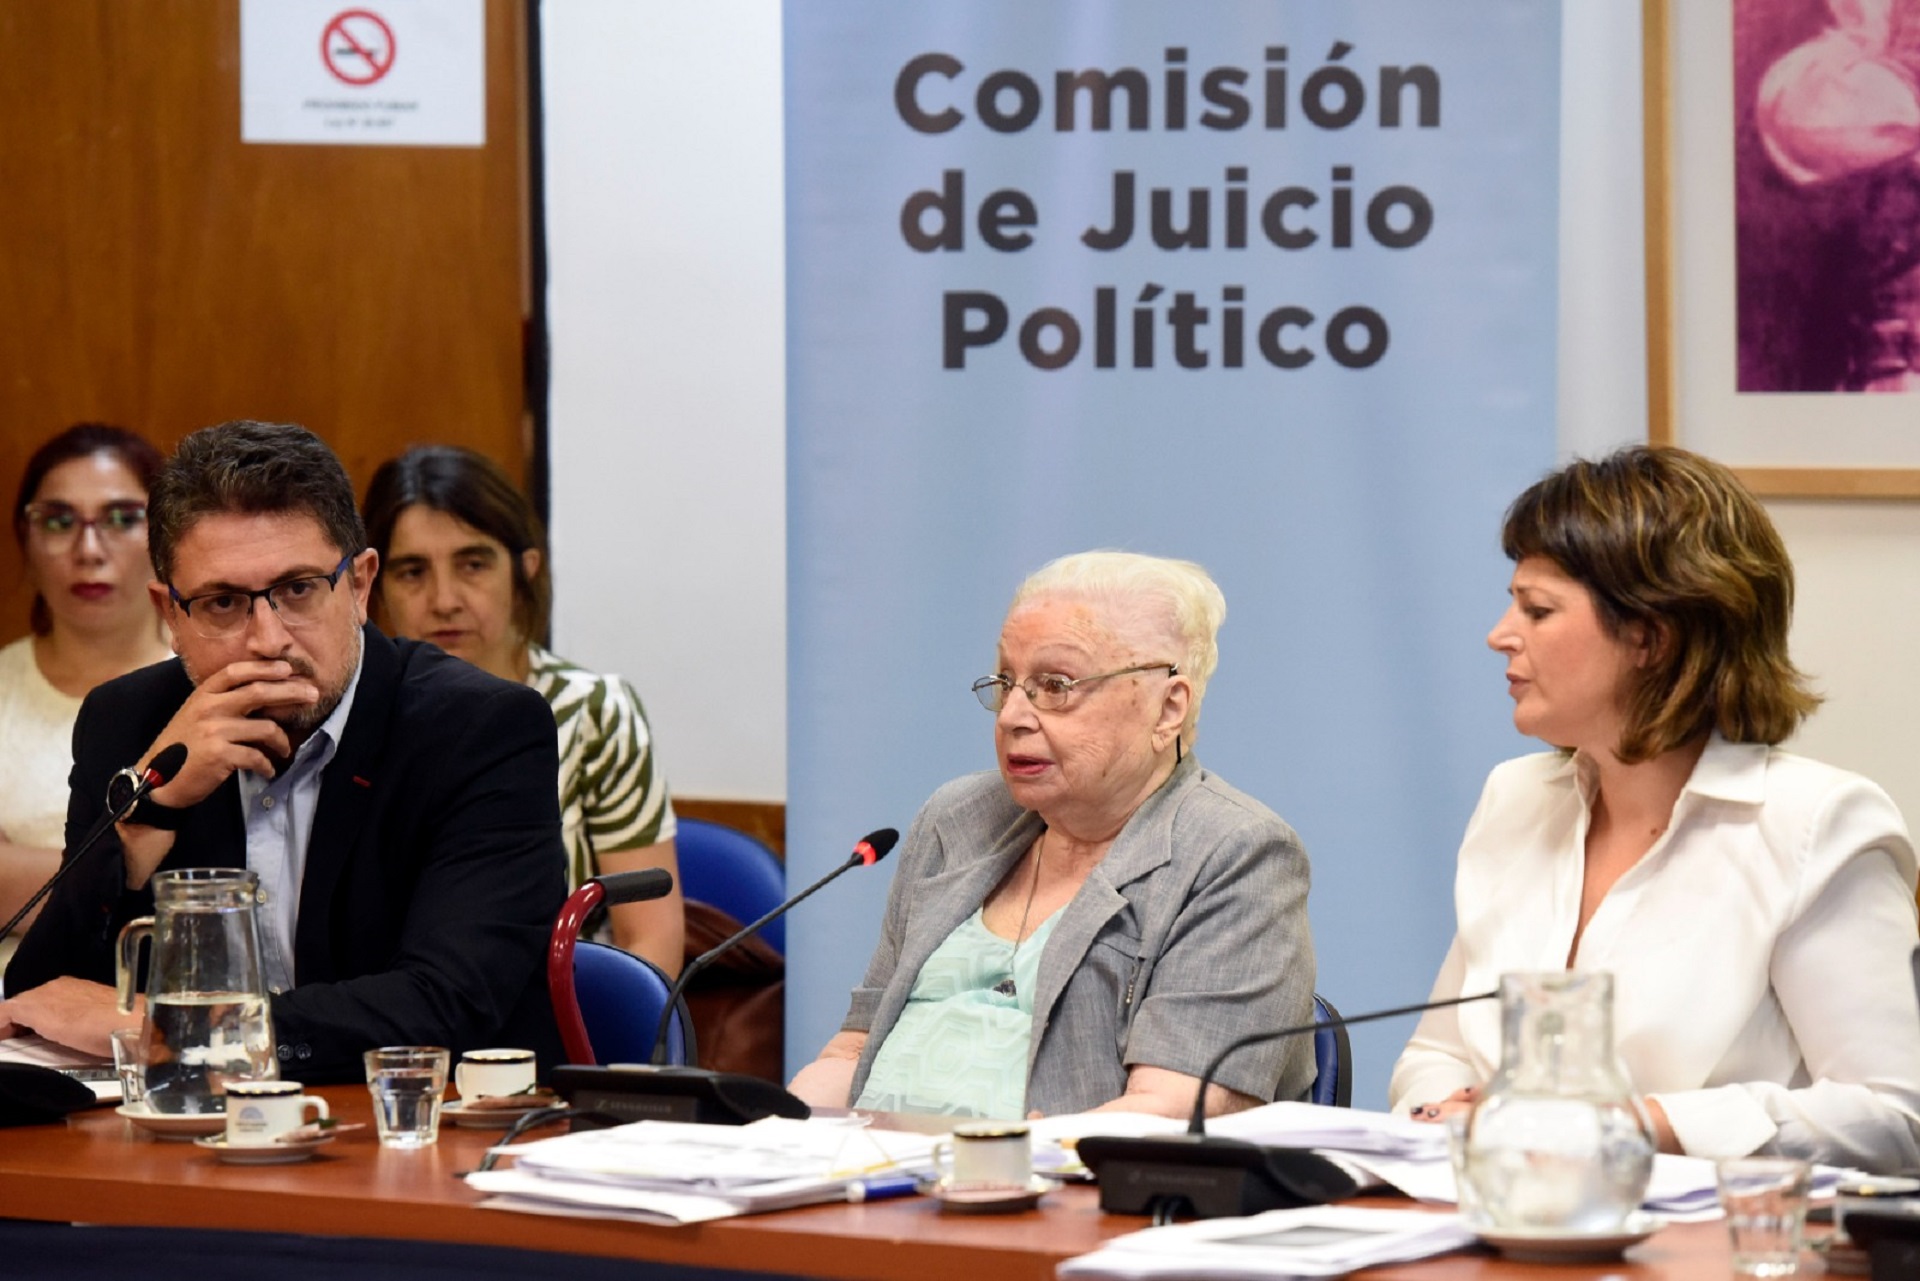 Gladys Cuervo, testigo ante la comisión de Juicio Político